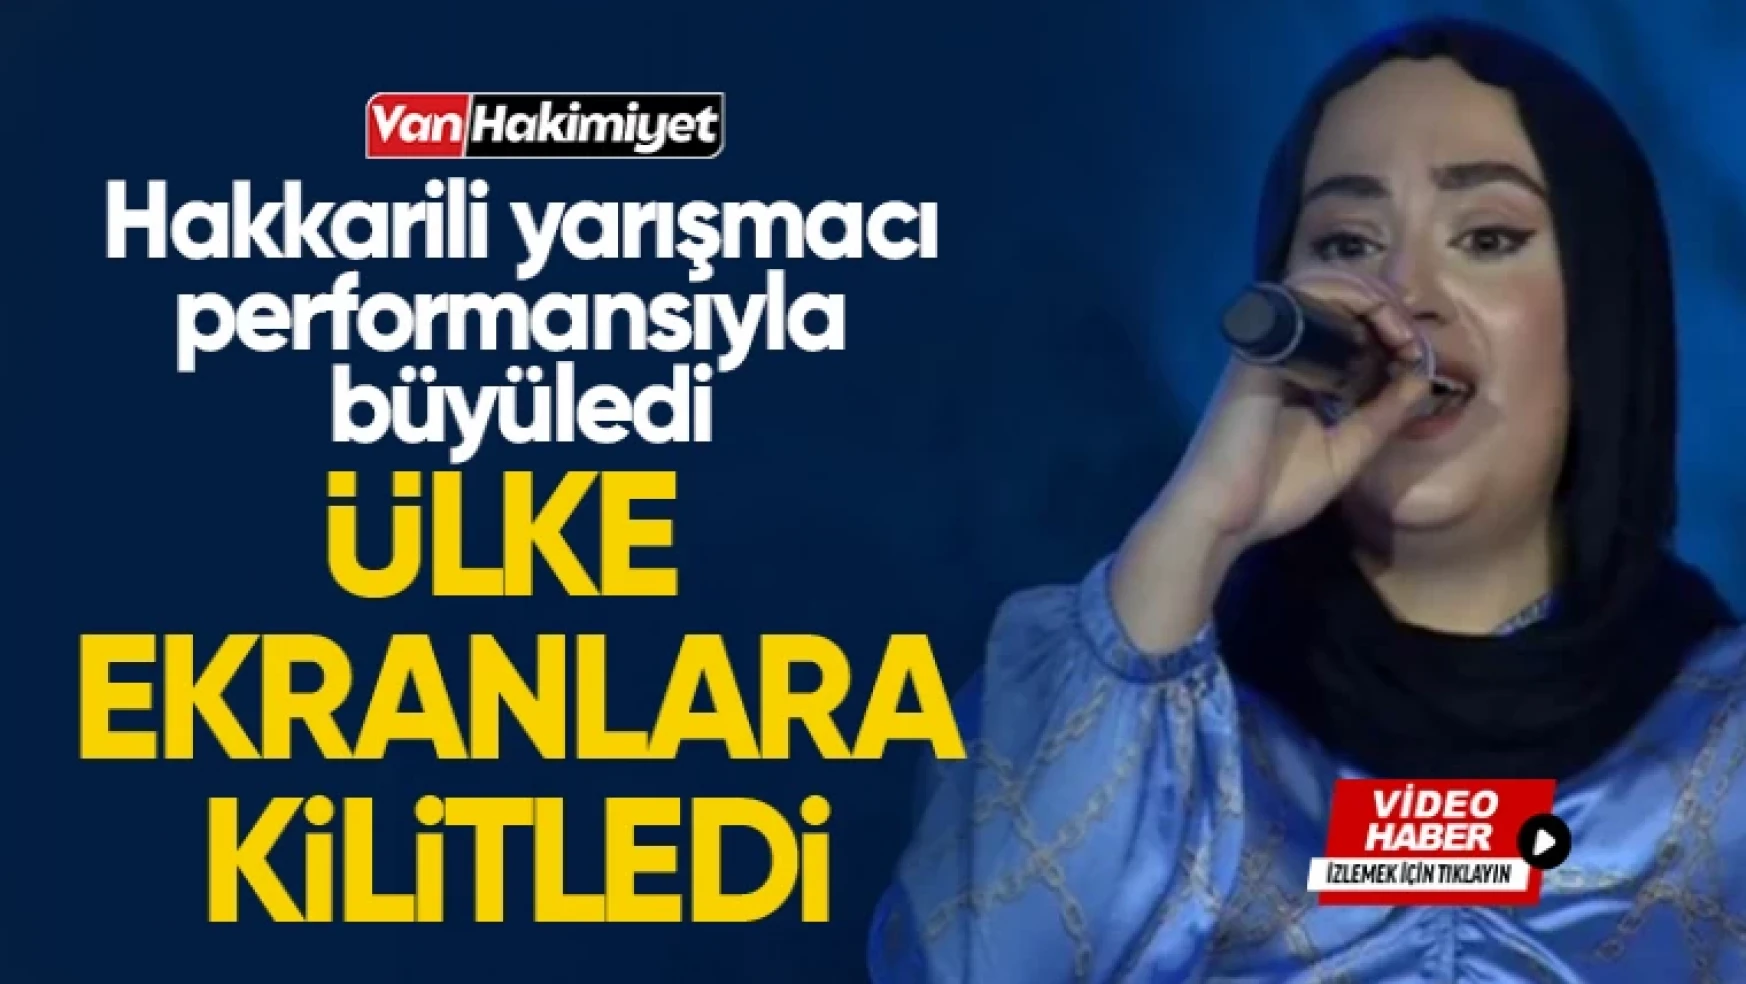 Hakkarili yarışmacı Songül Kalaç müzik severleri TRT ekranlarına kilitledi